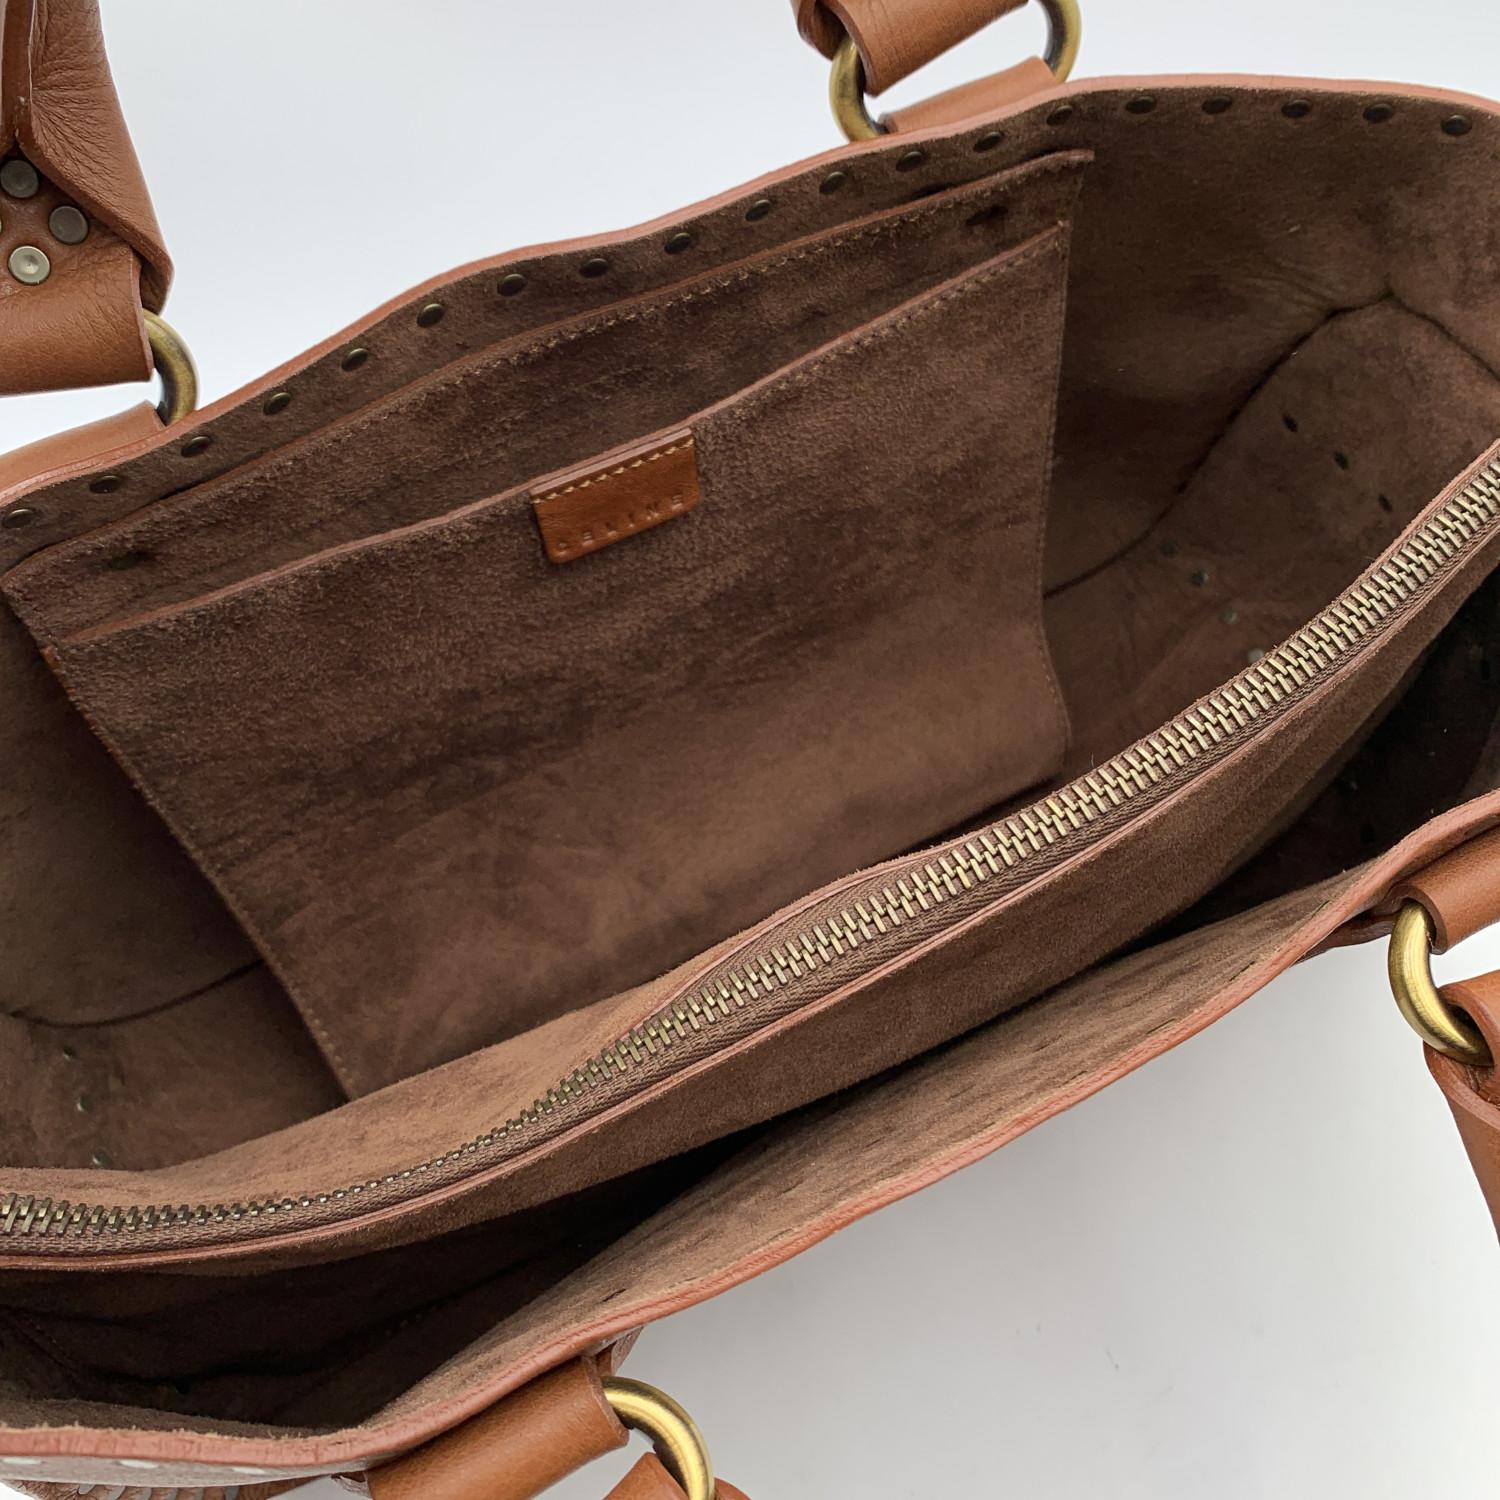 Celine Brown Leather Studded Boogie Bag Satchel Tote Handbag 2